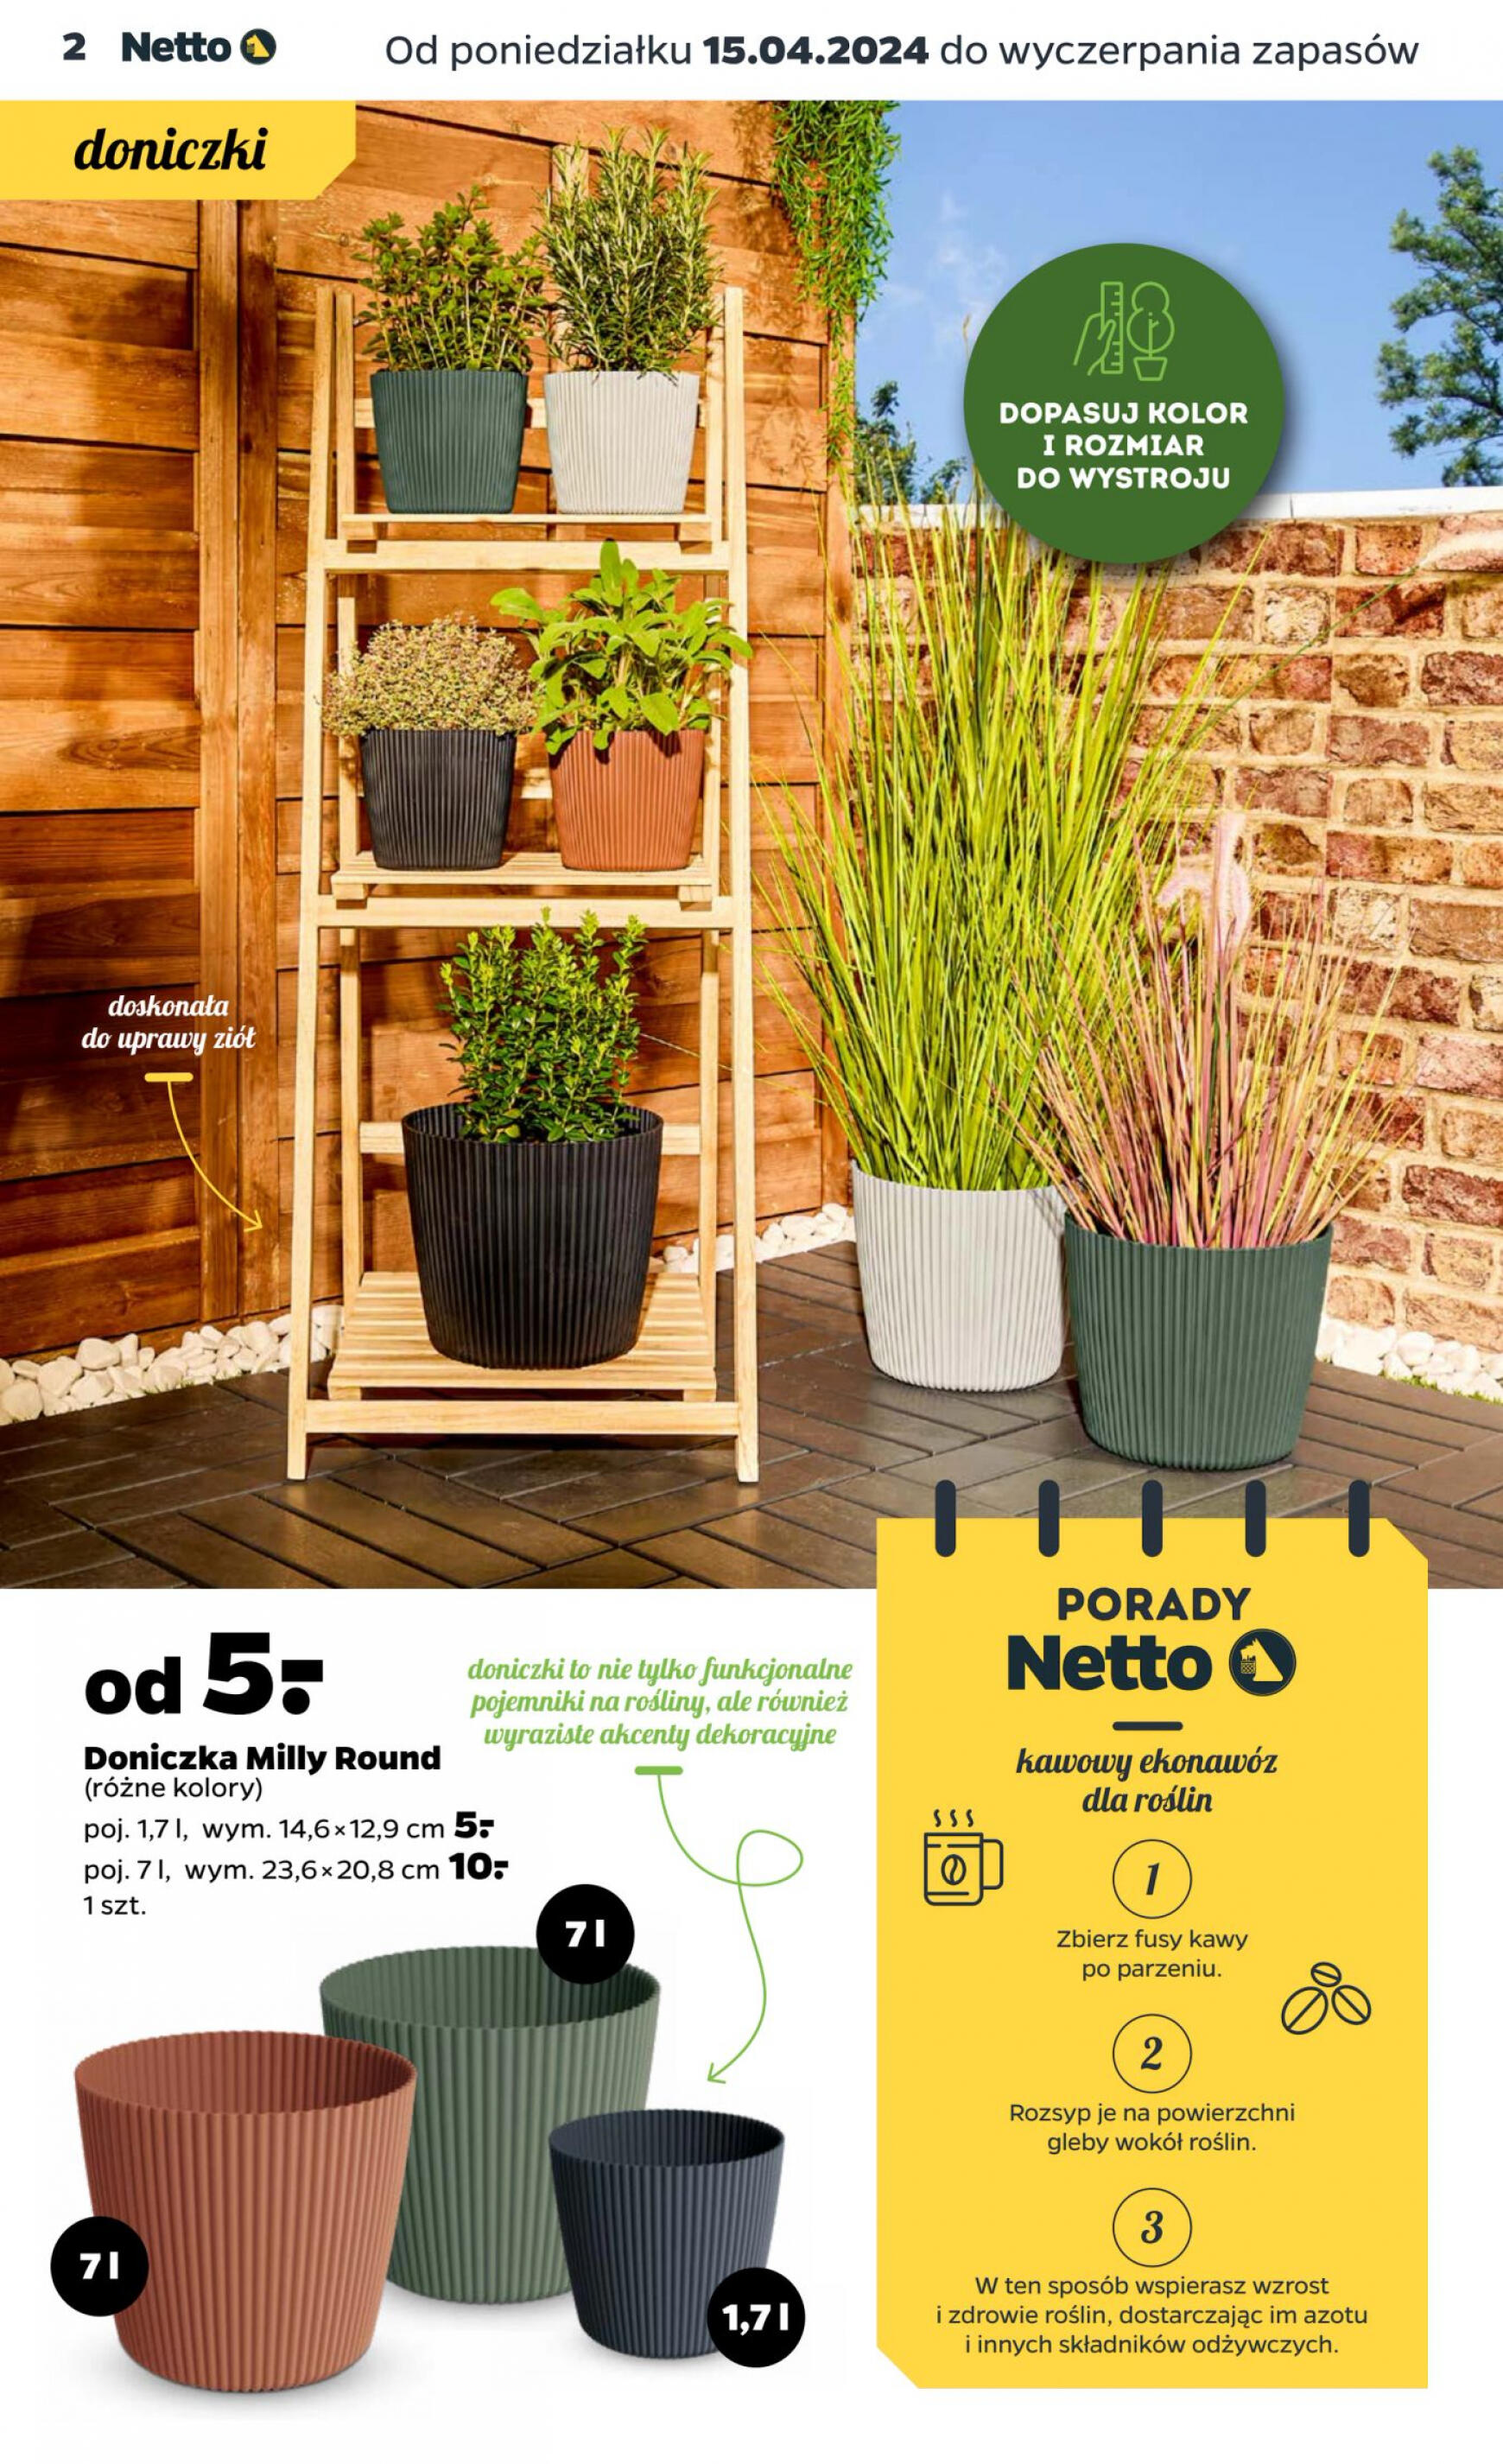 netto - Netto - Katalog ogrodowy gazetka aktualna ważna od 15.04. - 31.05. - page: 2